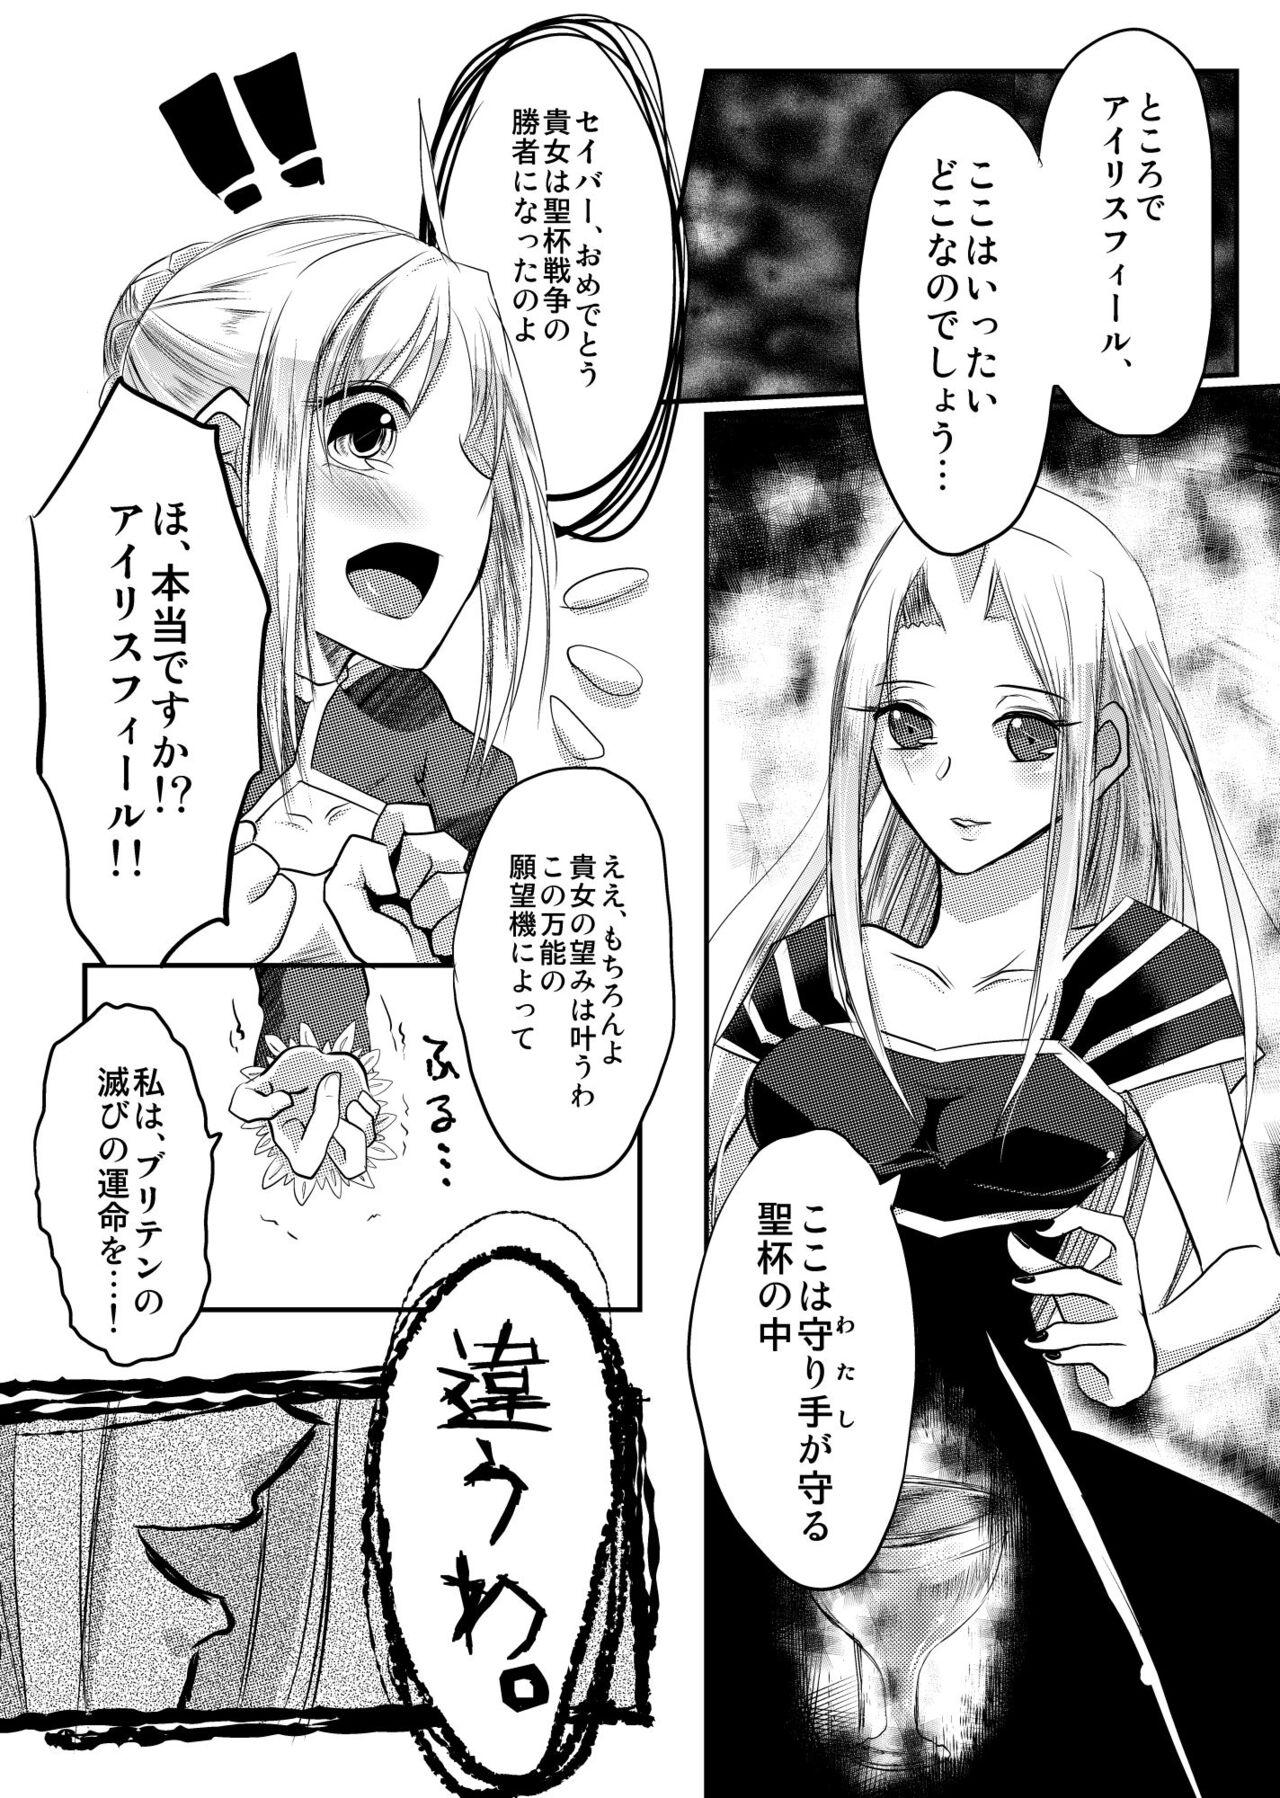 Cameltoe Daraku no Hana - Fate zero Salope - Page 7